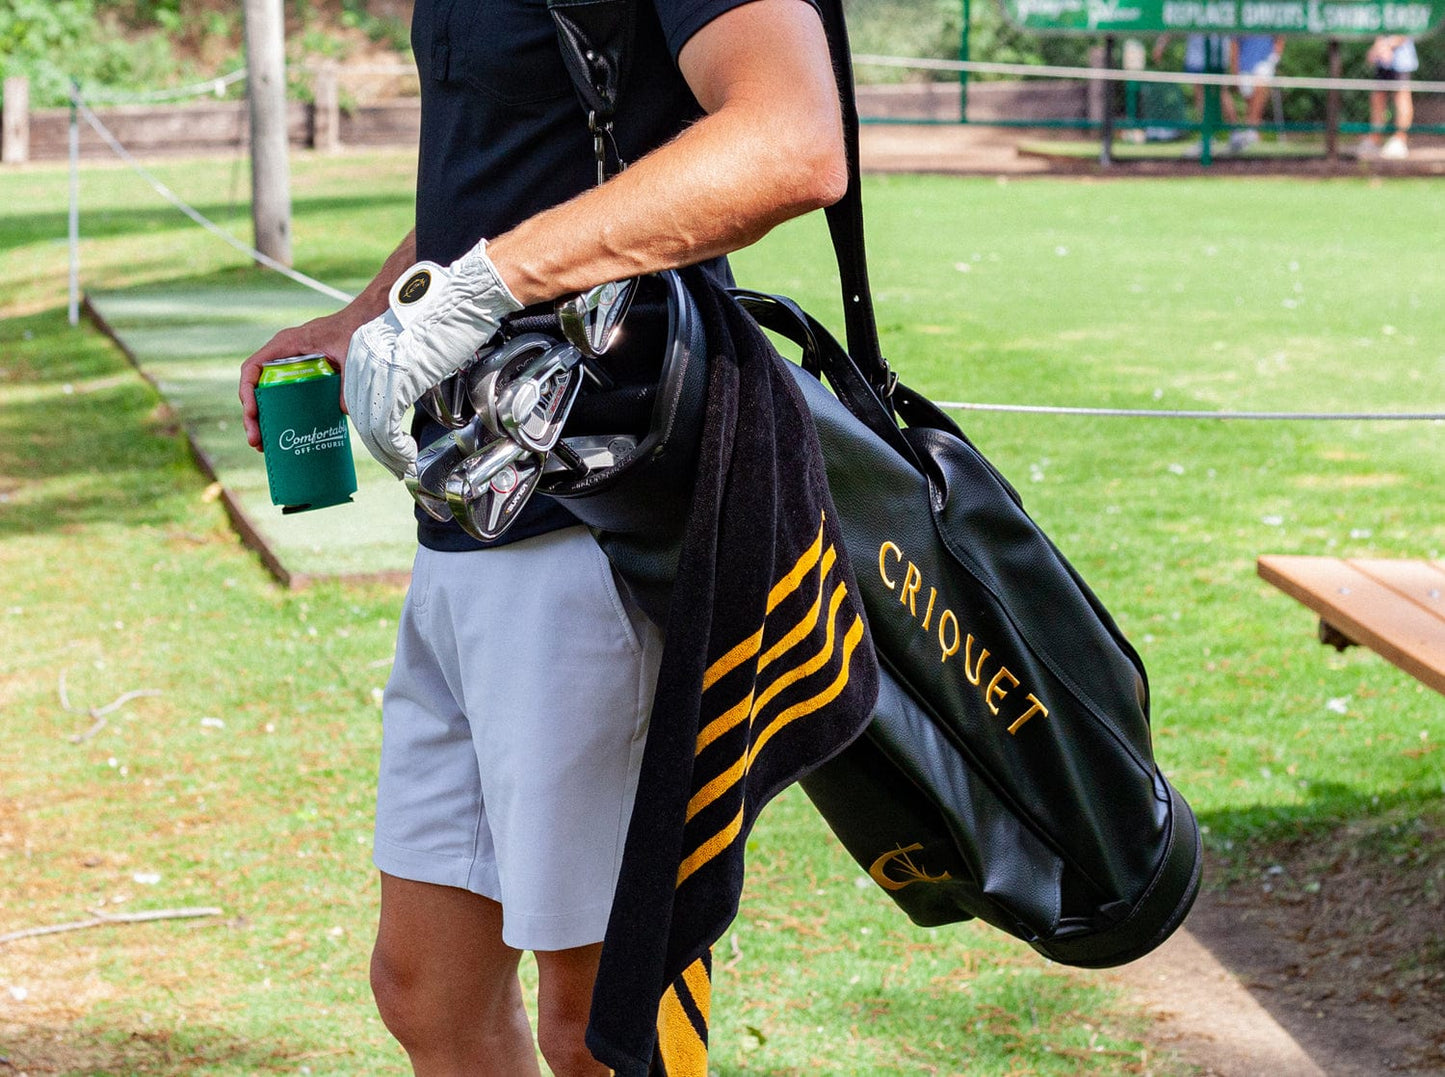 Terry Jacquard Golf Towel - Criquet Stripe - Black/Gold